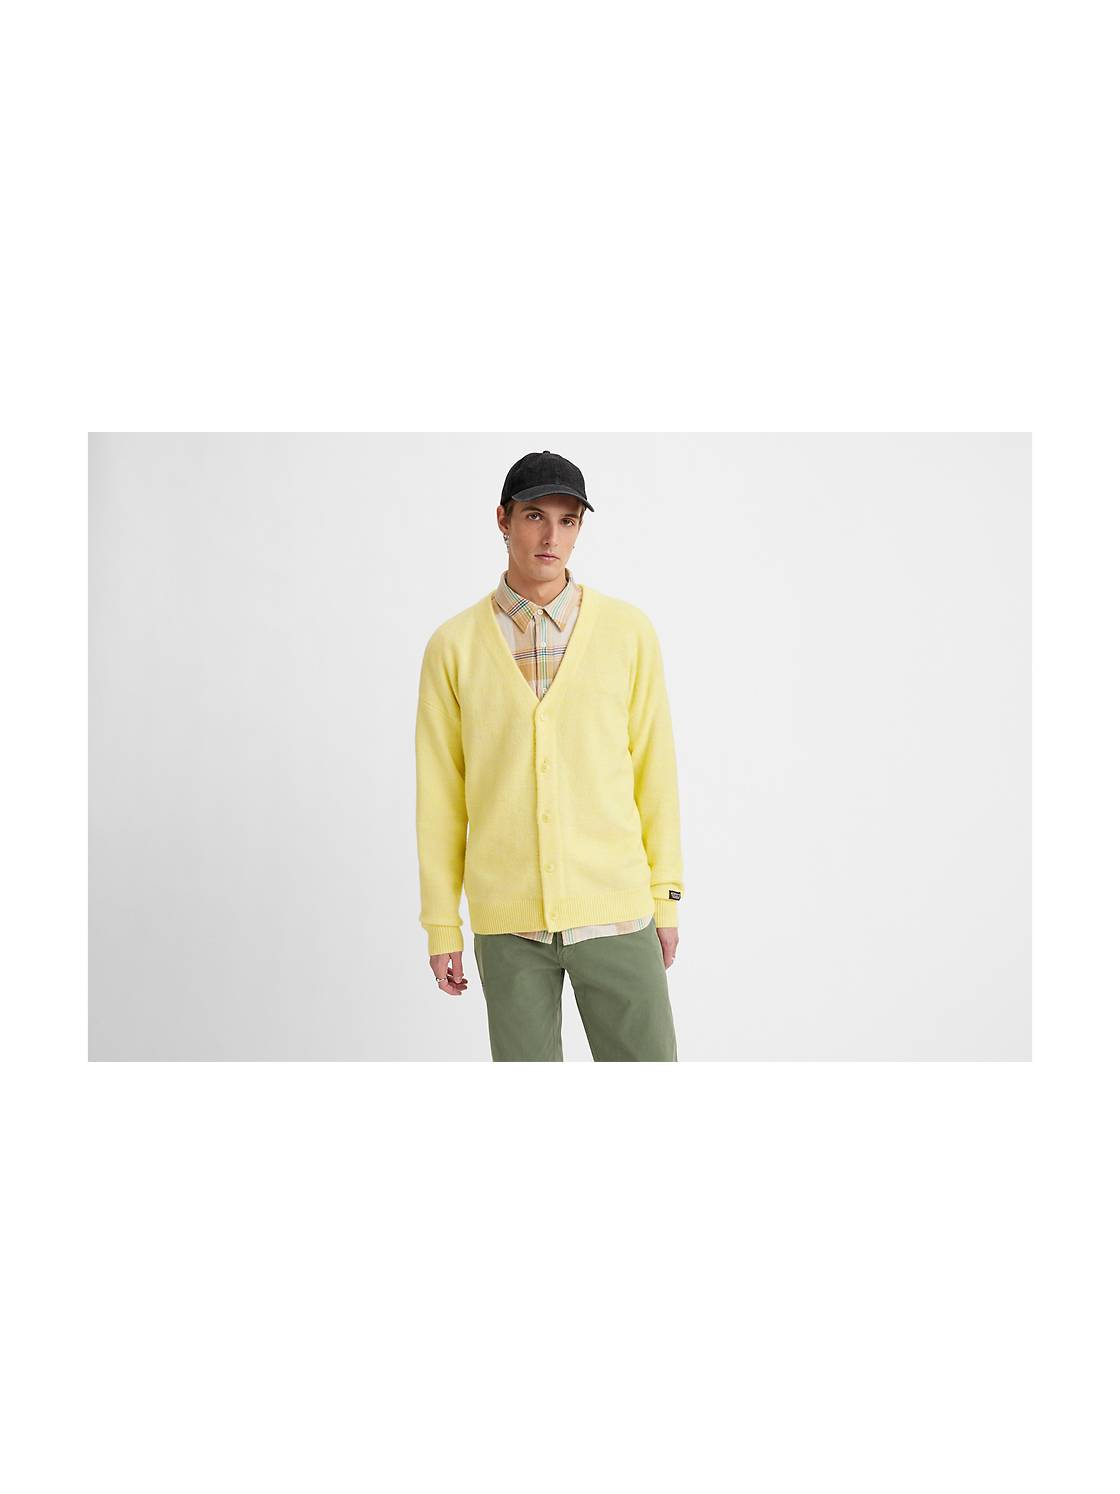 Yellow Hoodies & Sweatshirts